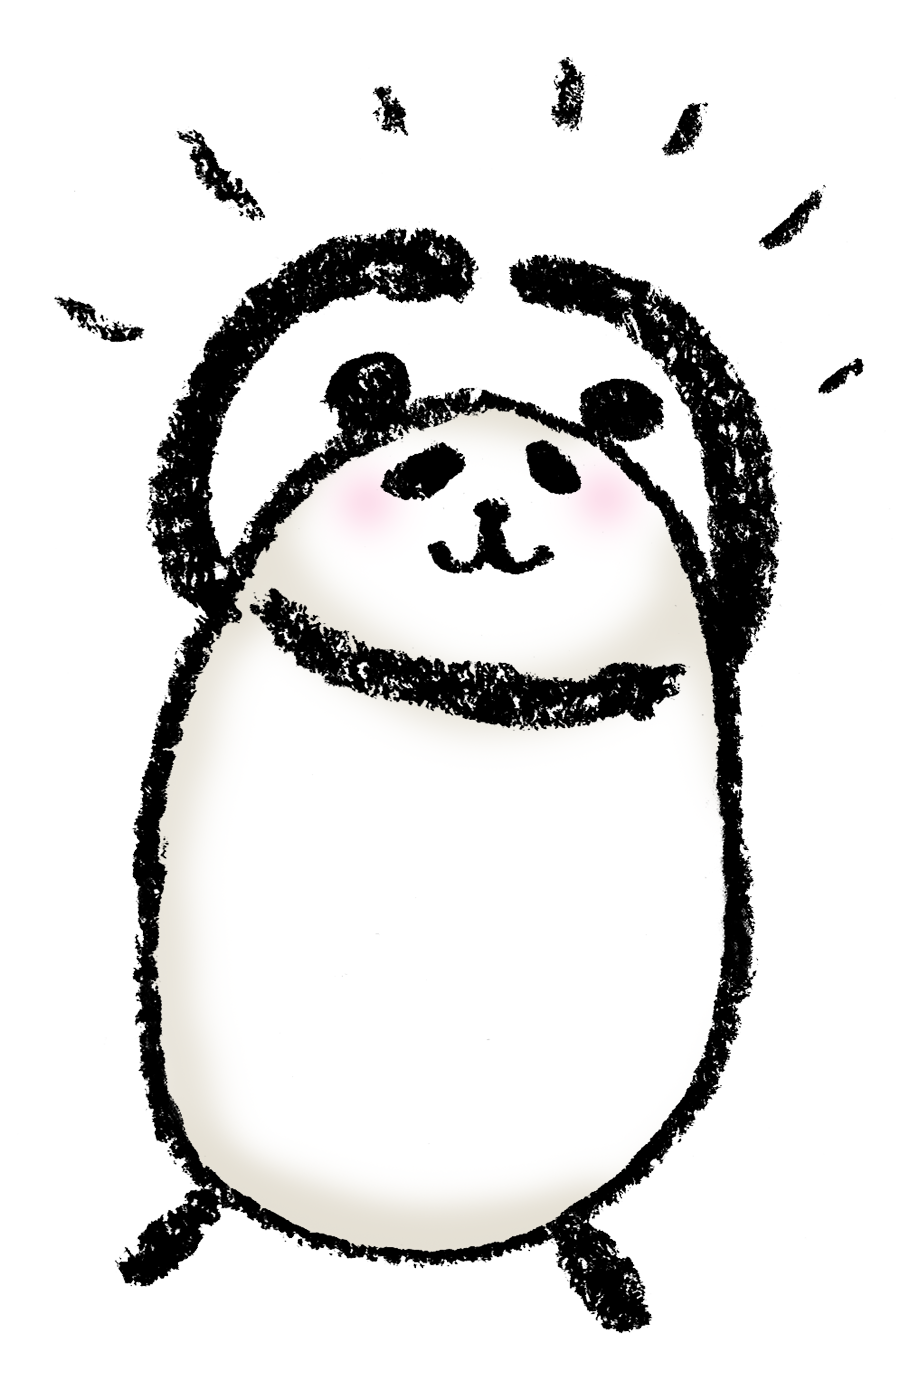 Okポーズのゆる可愛いパンダのイラスト えんぴつと画用紙